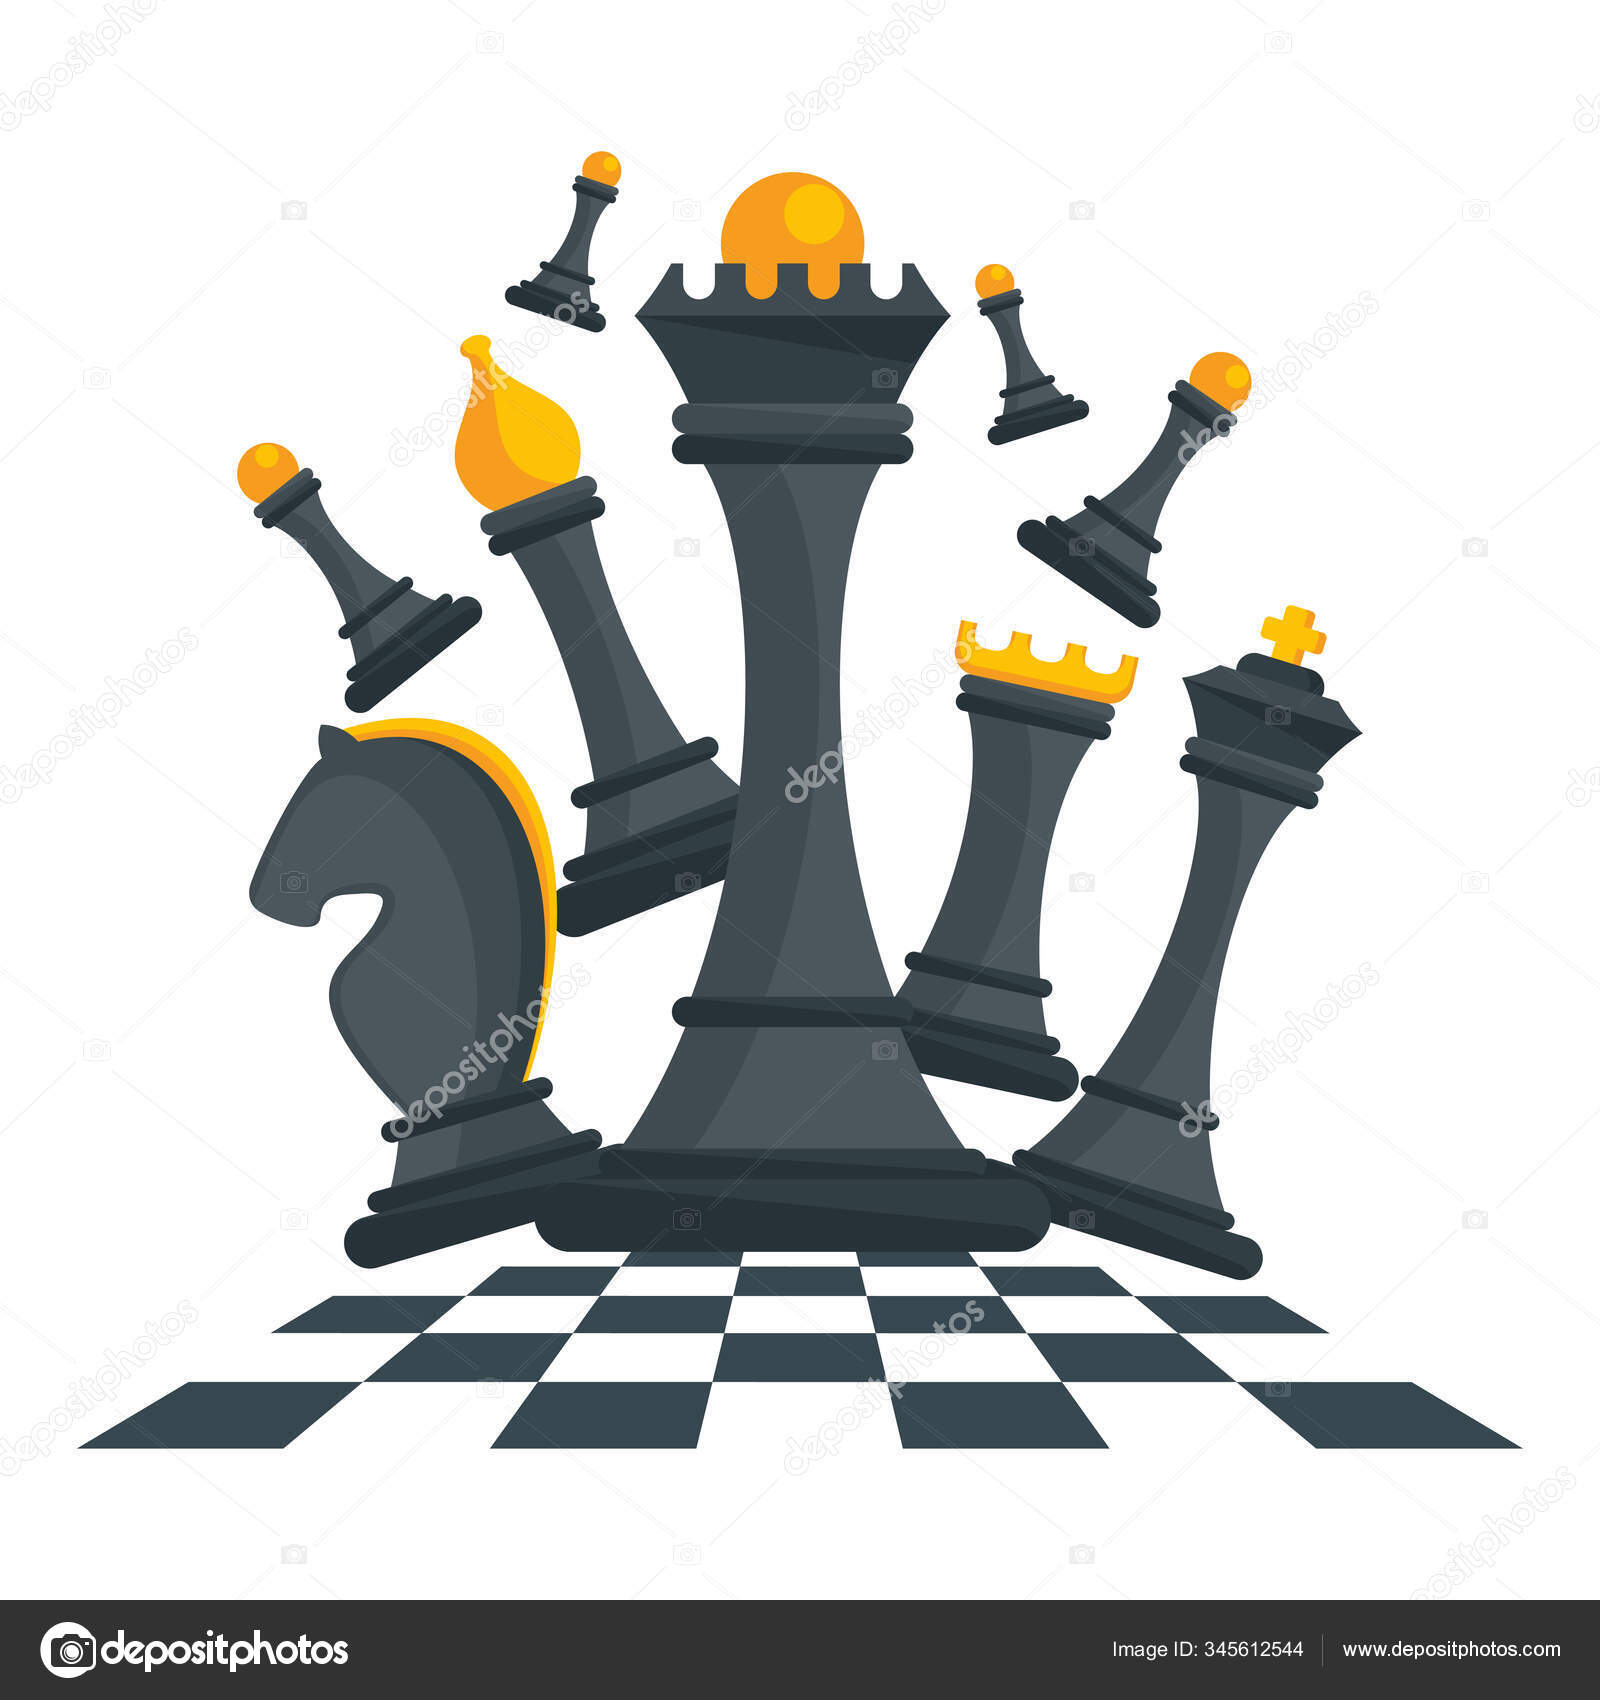 King chess fica em conceitos de tabuleiro de xadrez de desafio de